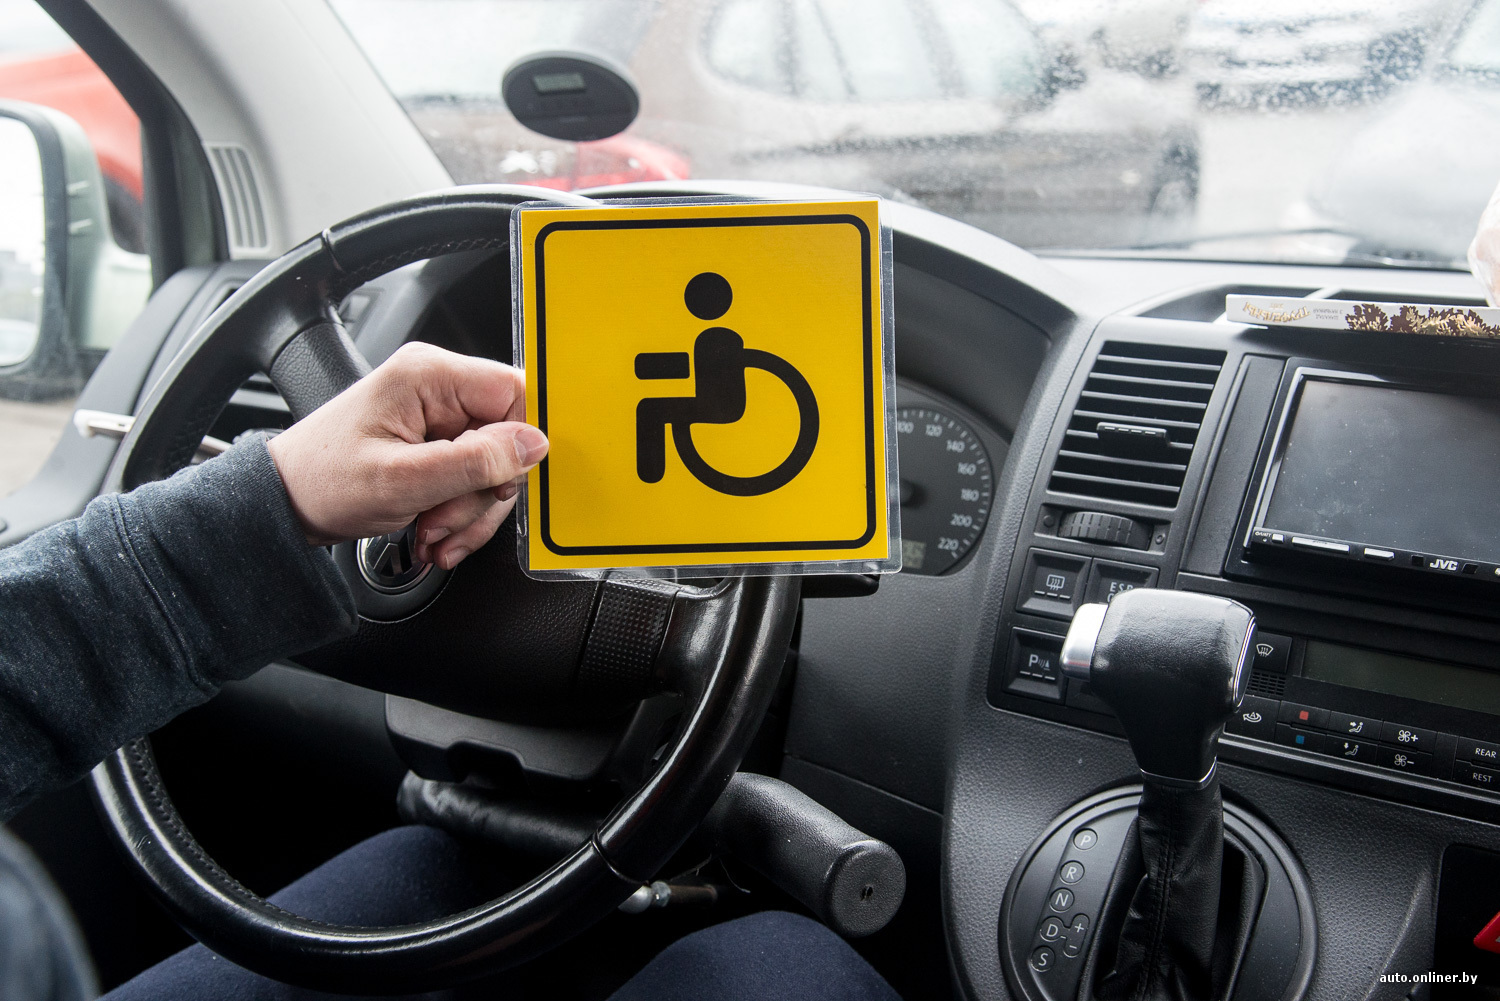 Парковка для людей с инвалидностью: ответы на часто задаваемые вопросы